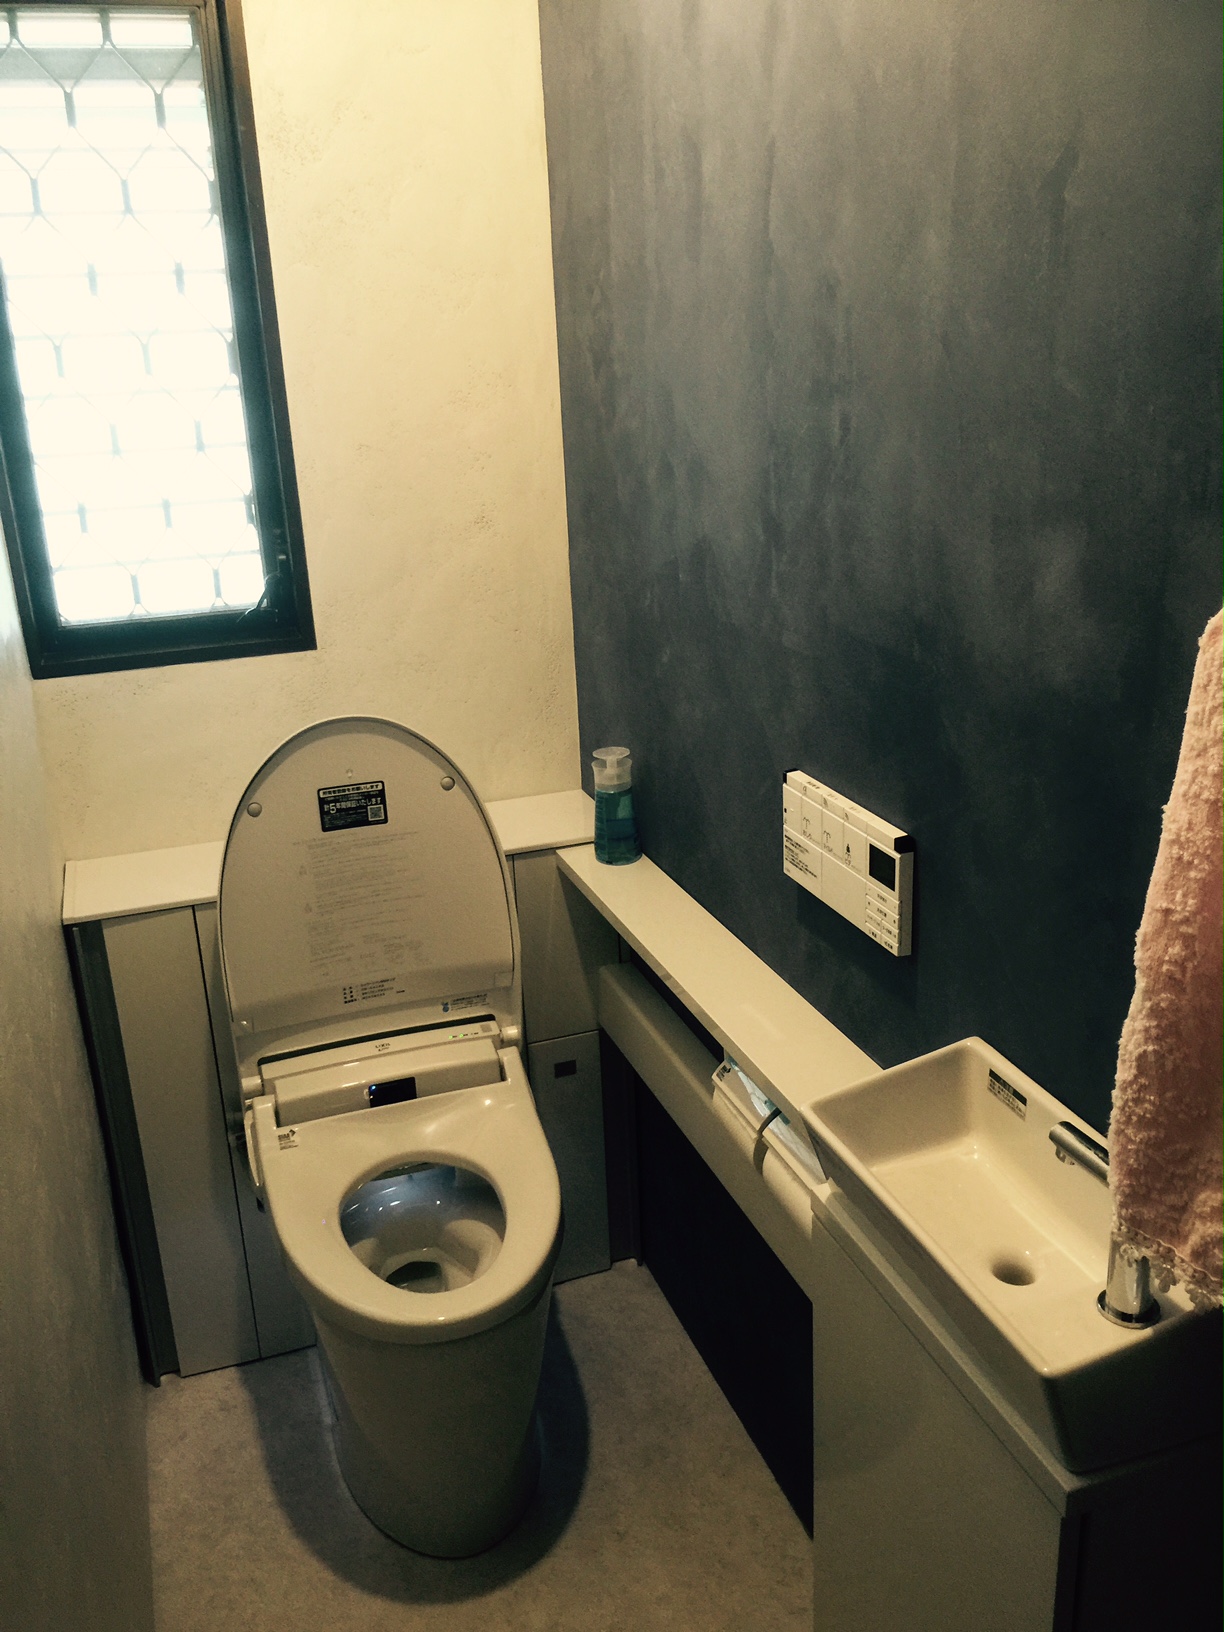 島根県松江市N様邸トイレ内装リフォーム工事完了しました。 【クロスマン 】松江市・出雲市のリフォーム